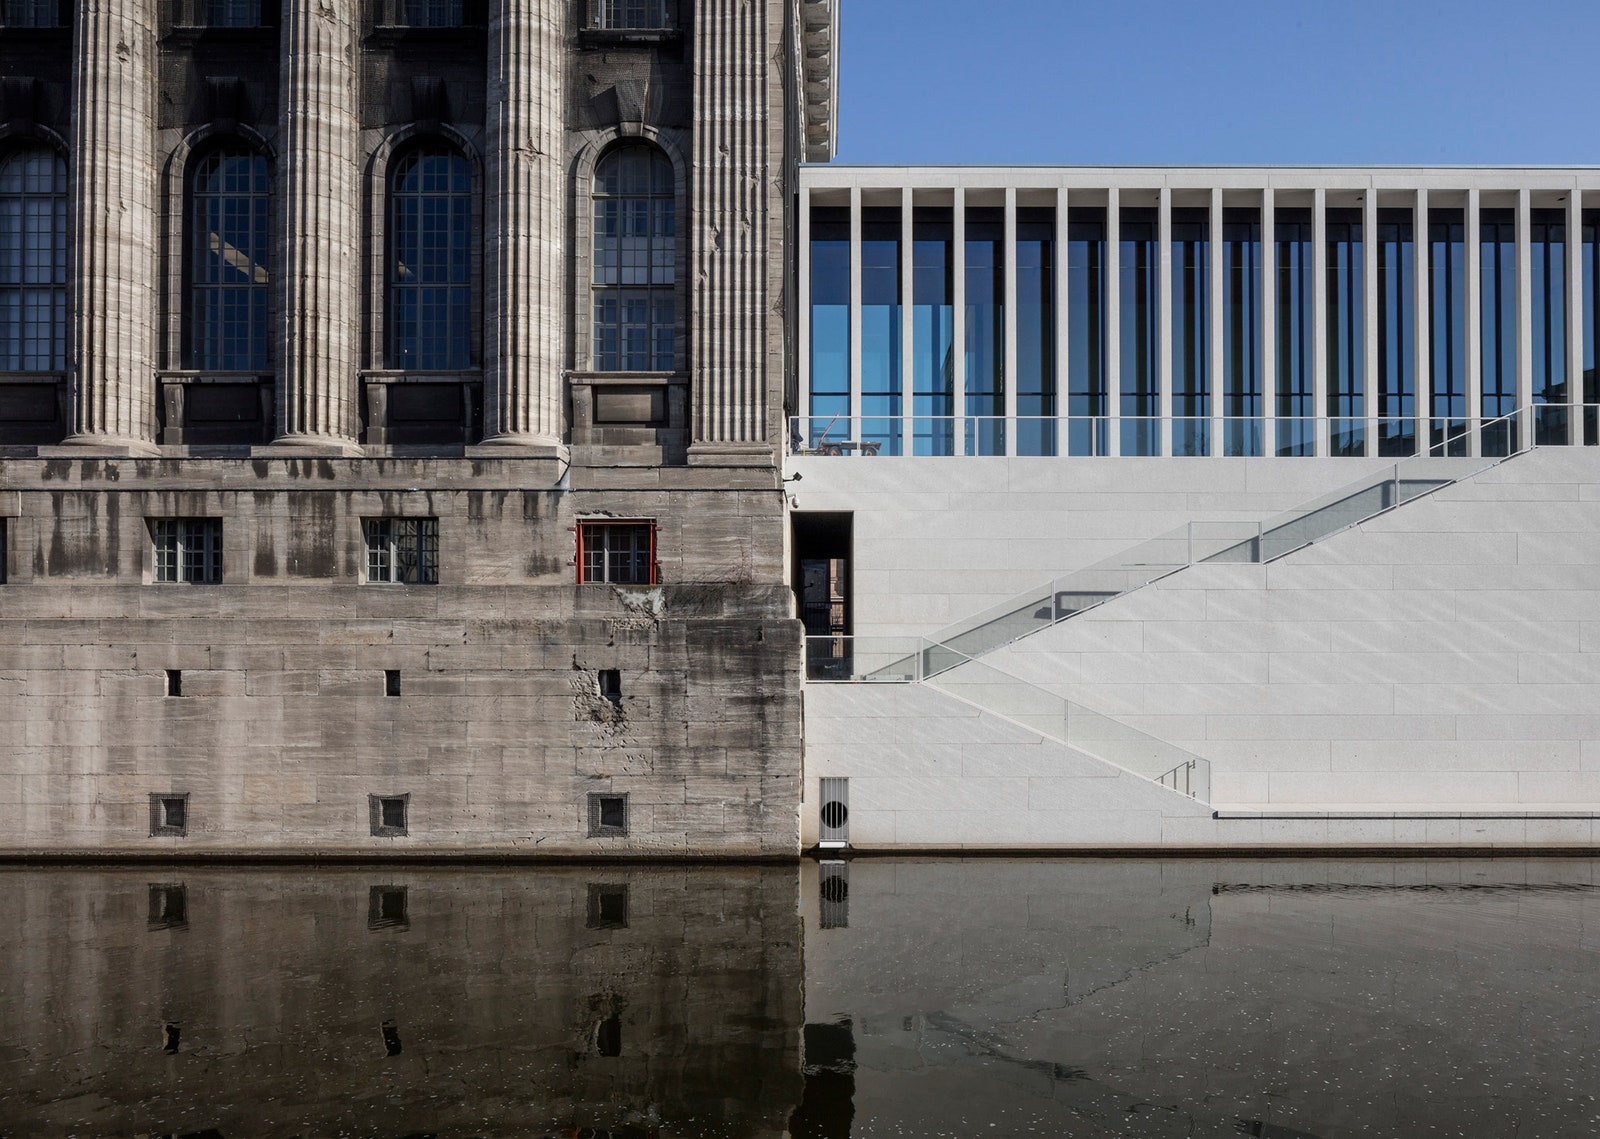 В Берлине открылась Галерея Джеймса Симона по проекту Дэвида Чипперфилда